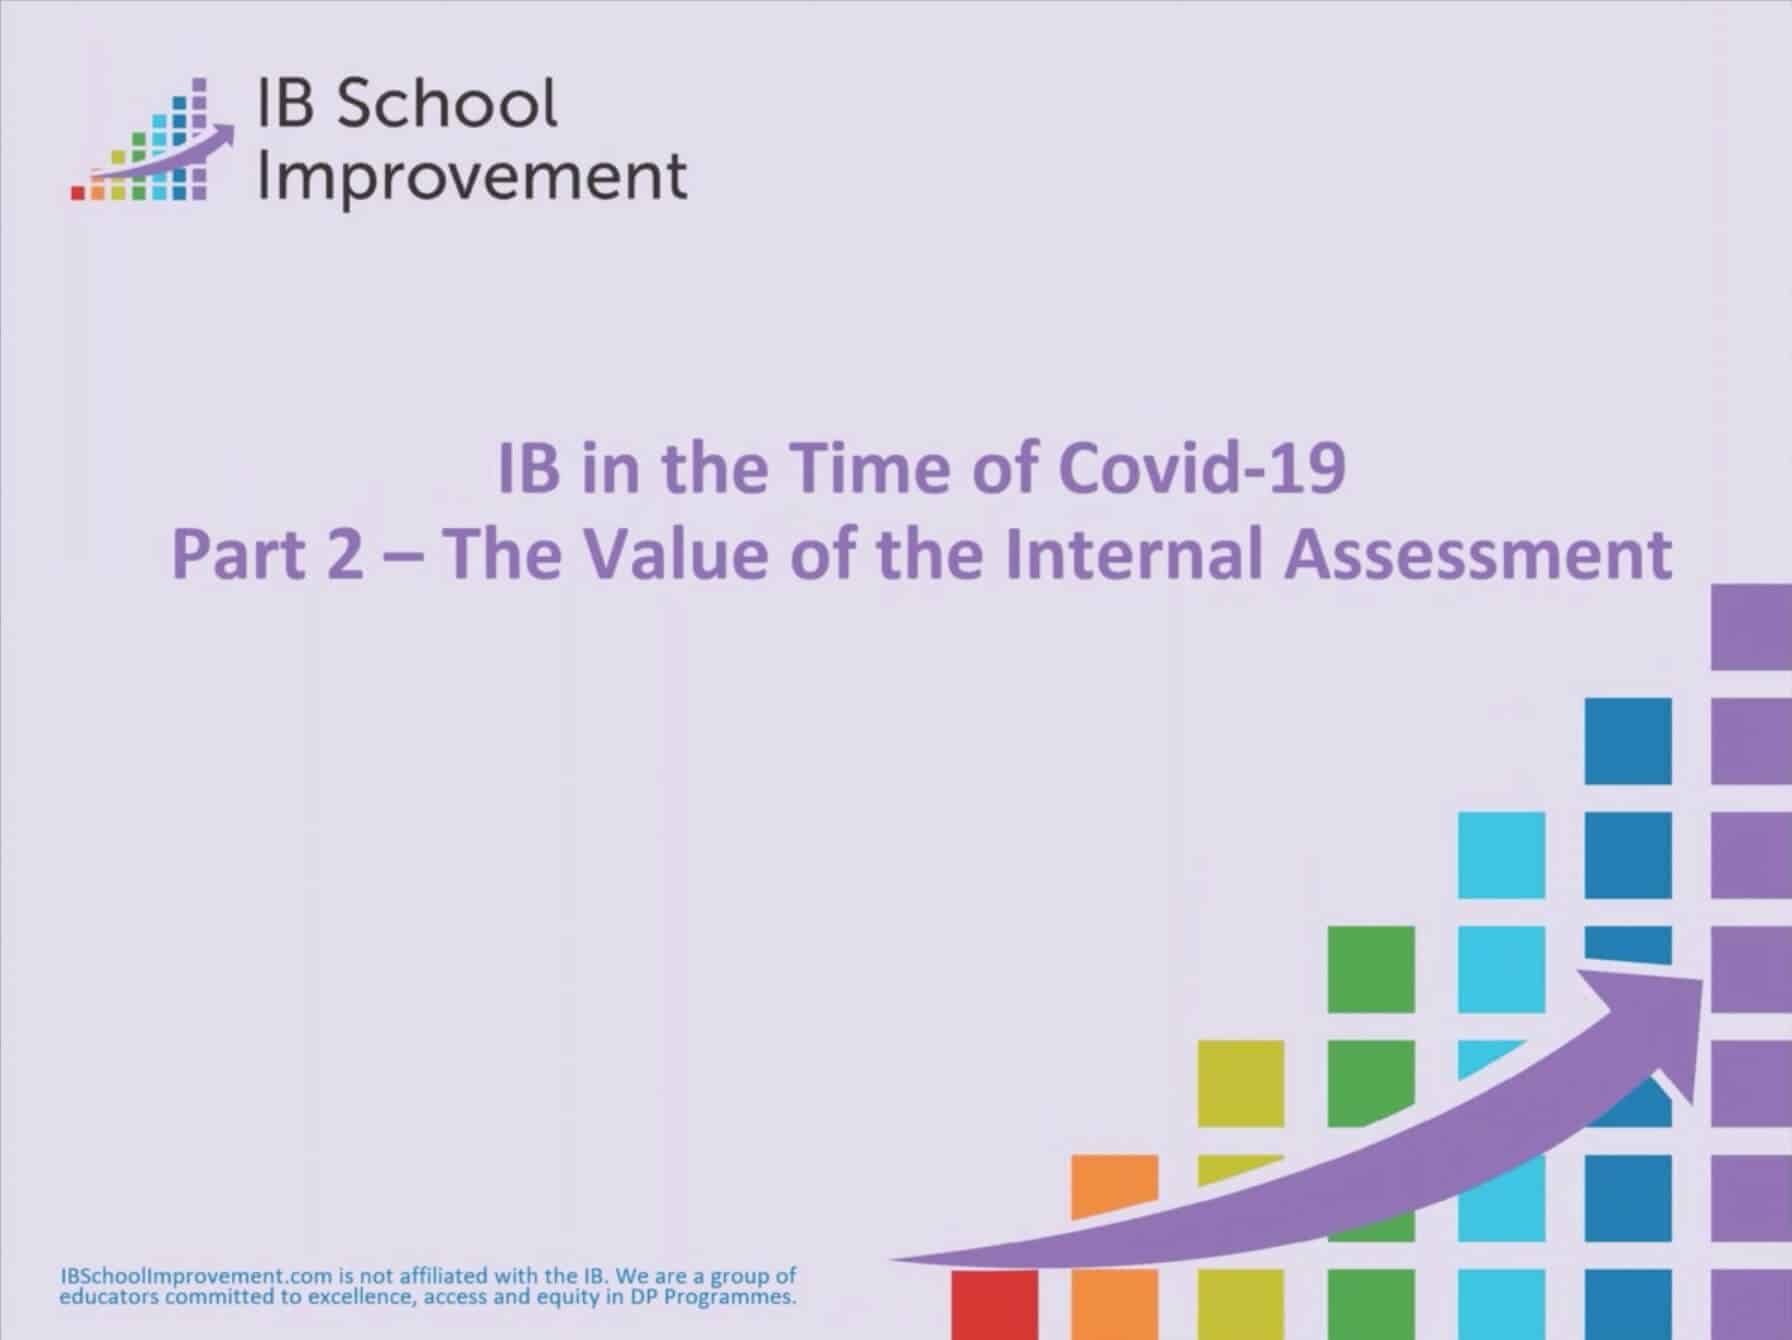 IB学校教学管理提升系列: 校内评估 – 过往经验， 助力未来